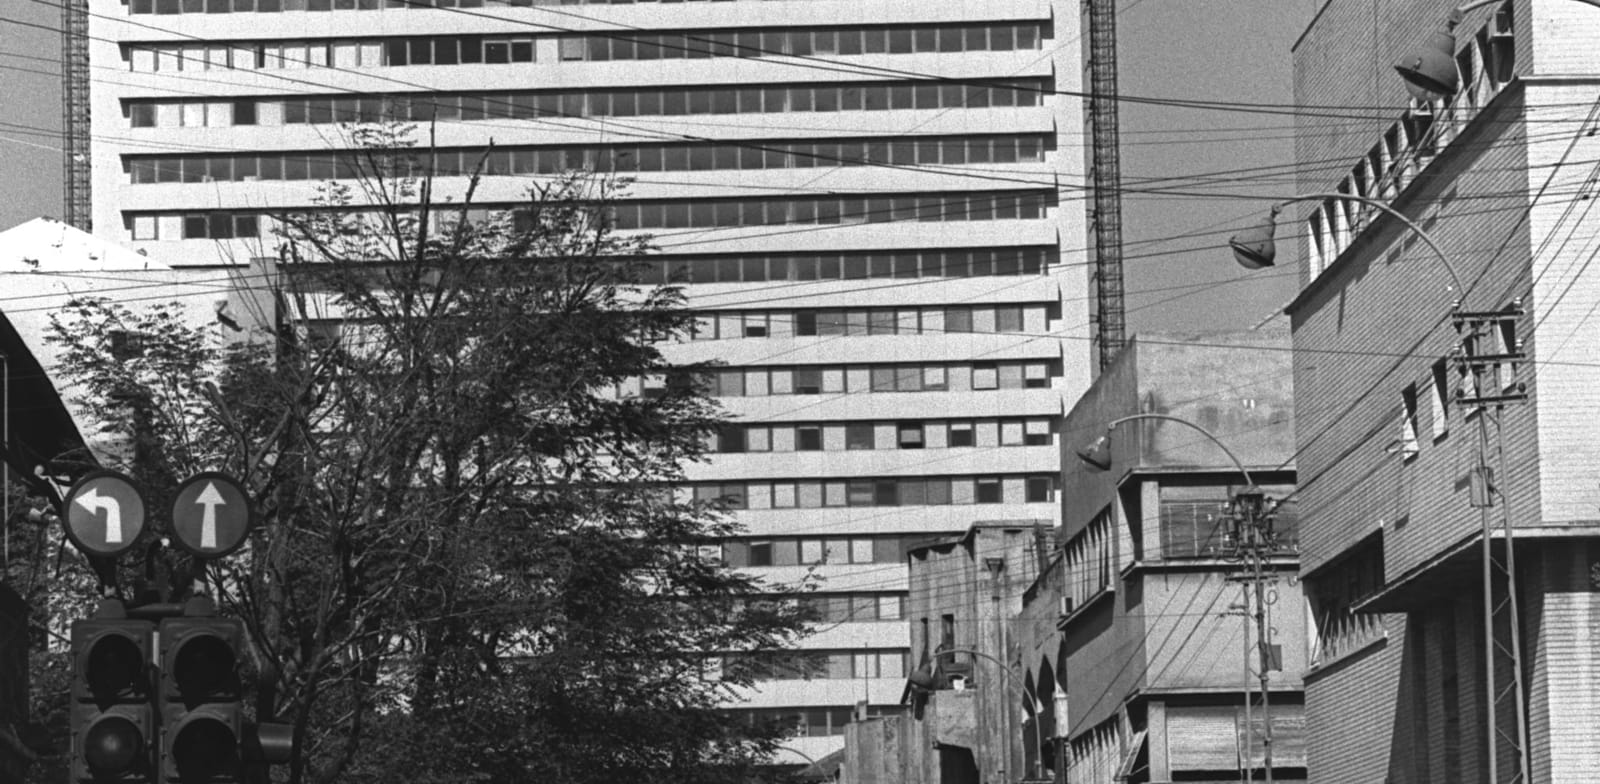 מגדל שלום בת''א בסמוך להקמתו בשנות ה-60' / צילום: Bruner Ilan, לע''מ